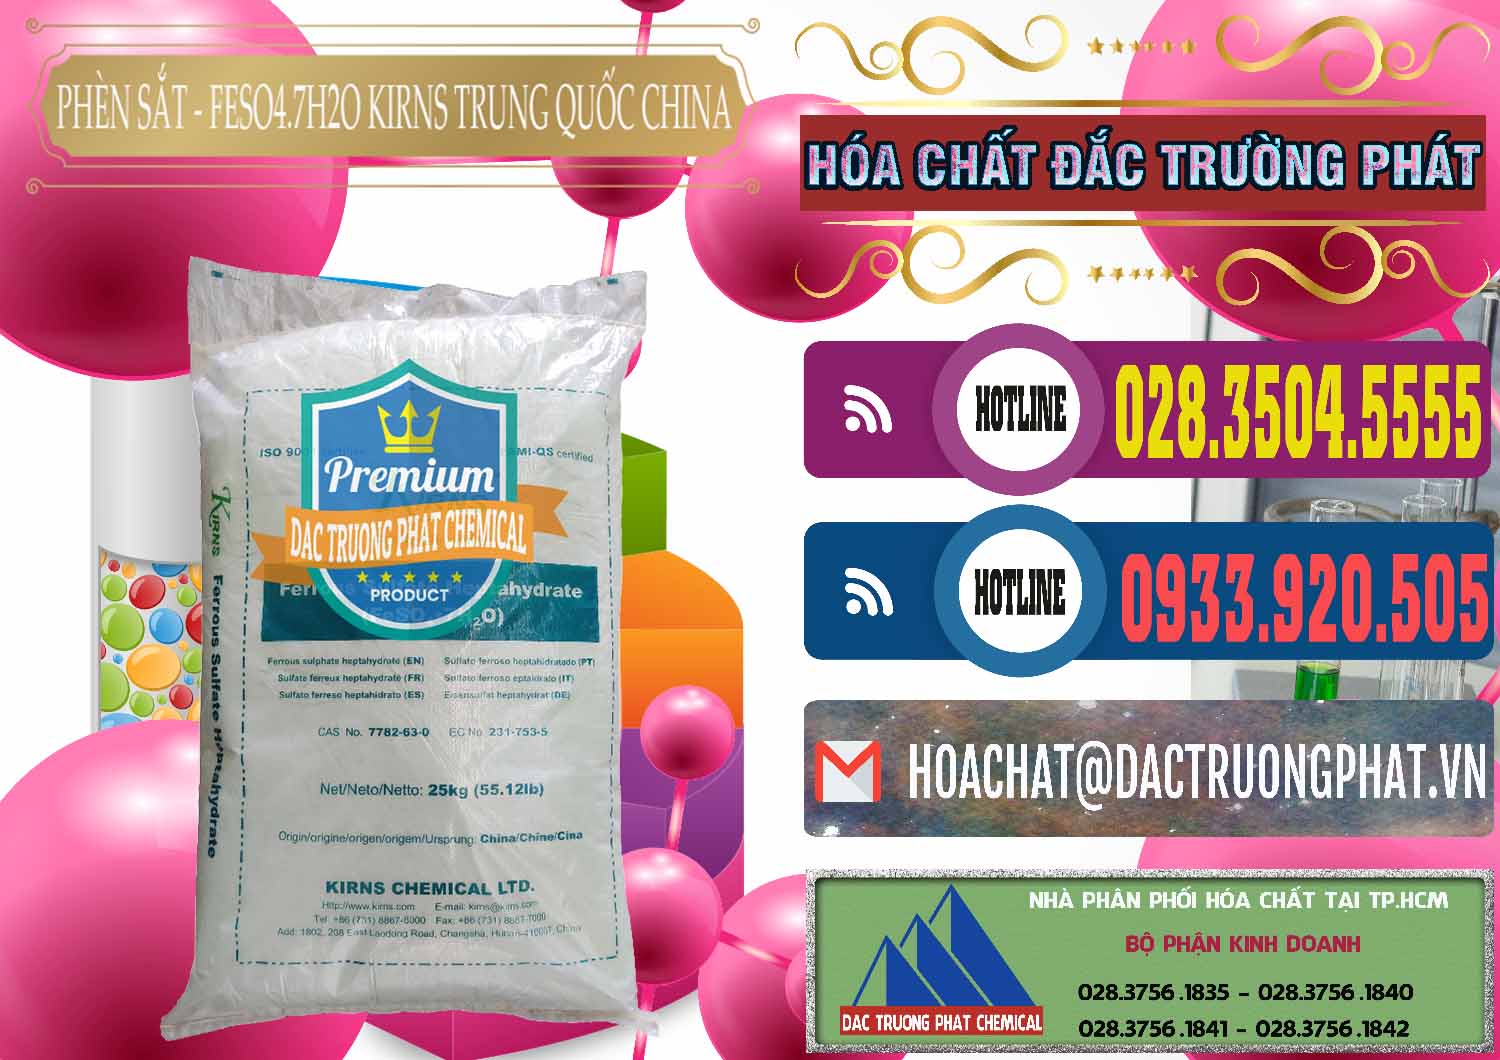 Cty chuyên phân phối - bán Phèn Sắt - FeSO4.7H2O 98% Kirns Trung Quốc China - 0117 - Cty chuyên nhập khẩu _ phân phối hóa chất tại TP.HCM - muabanhoachat.com.vn